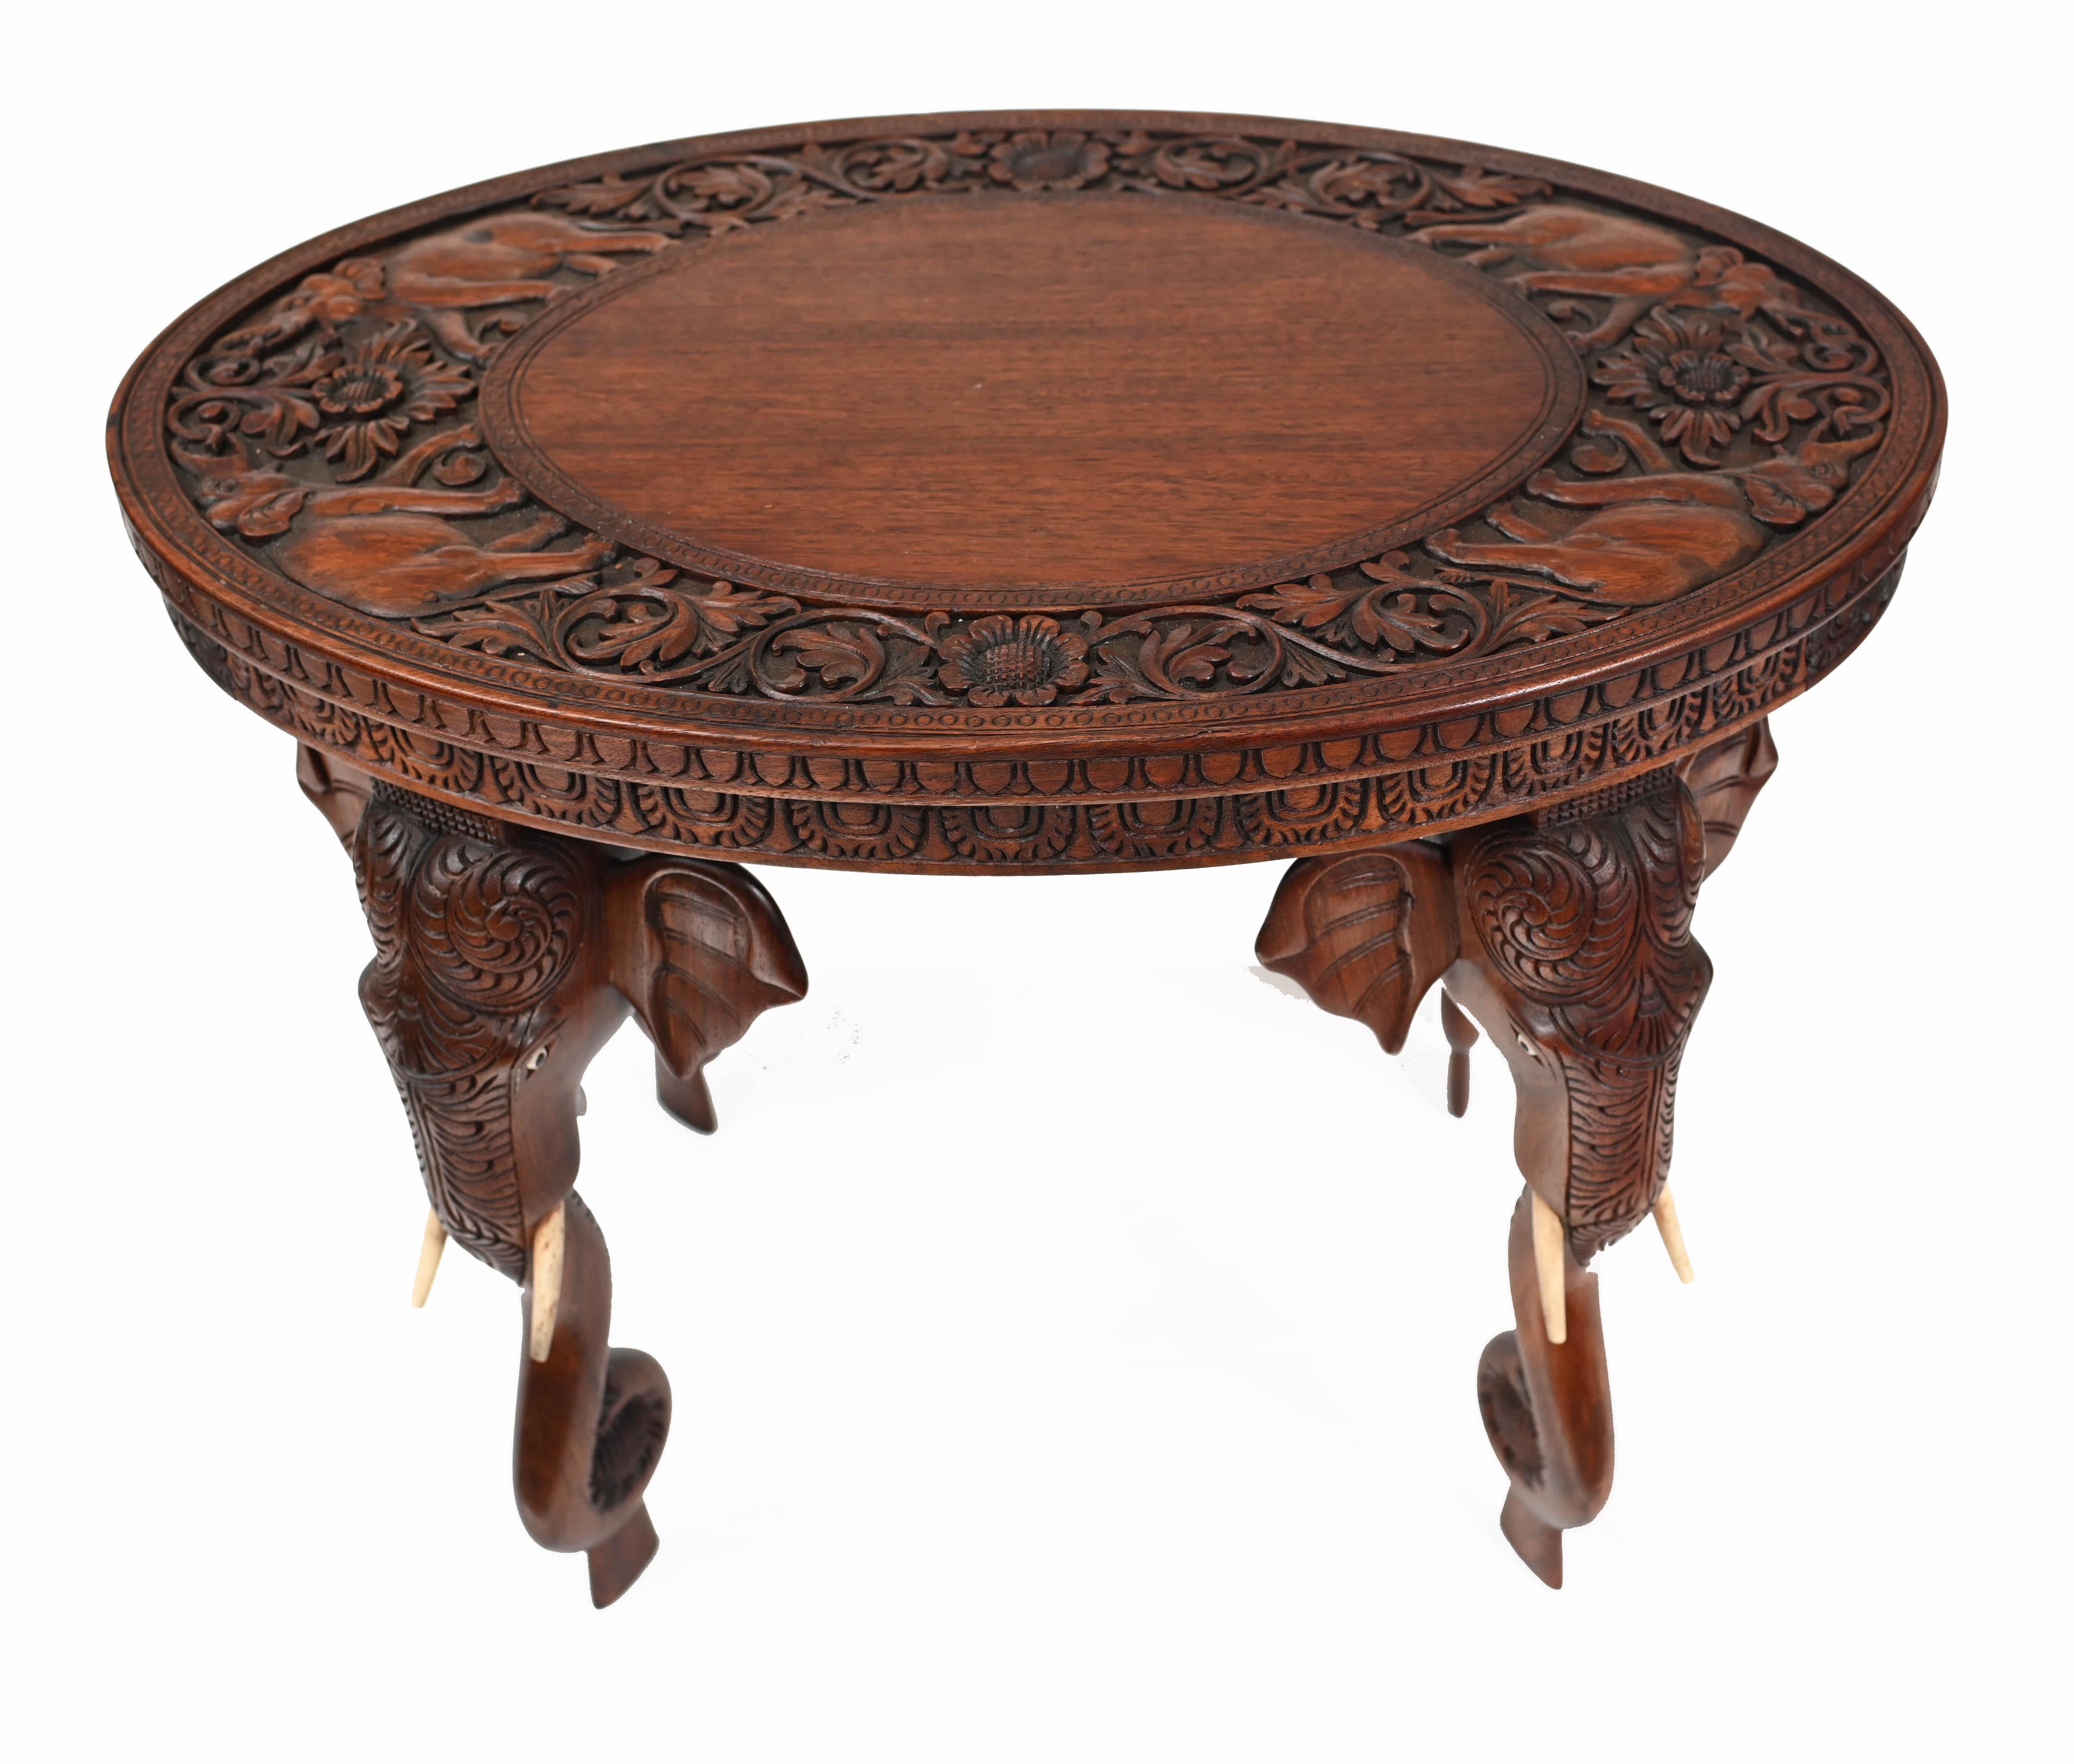 Magnifique table d'appoint birmane avec pieds d'éléphant sculptés à la main
Cette table a un aspect très particulier et nous la datons d'environ 1890.
Offert en grande forme, prêt à être utilisé immédiatement à la maison.
Nous expédions aux